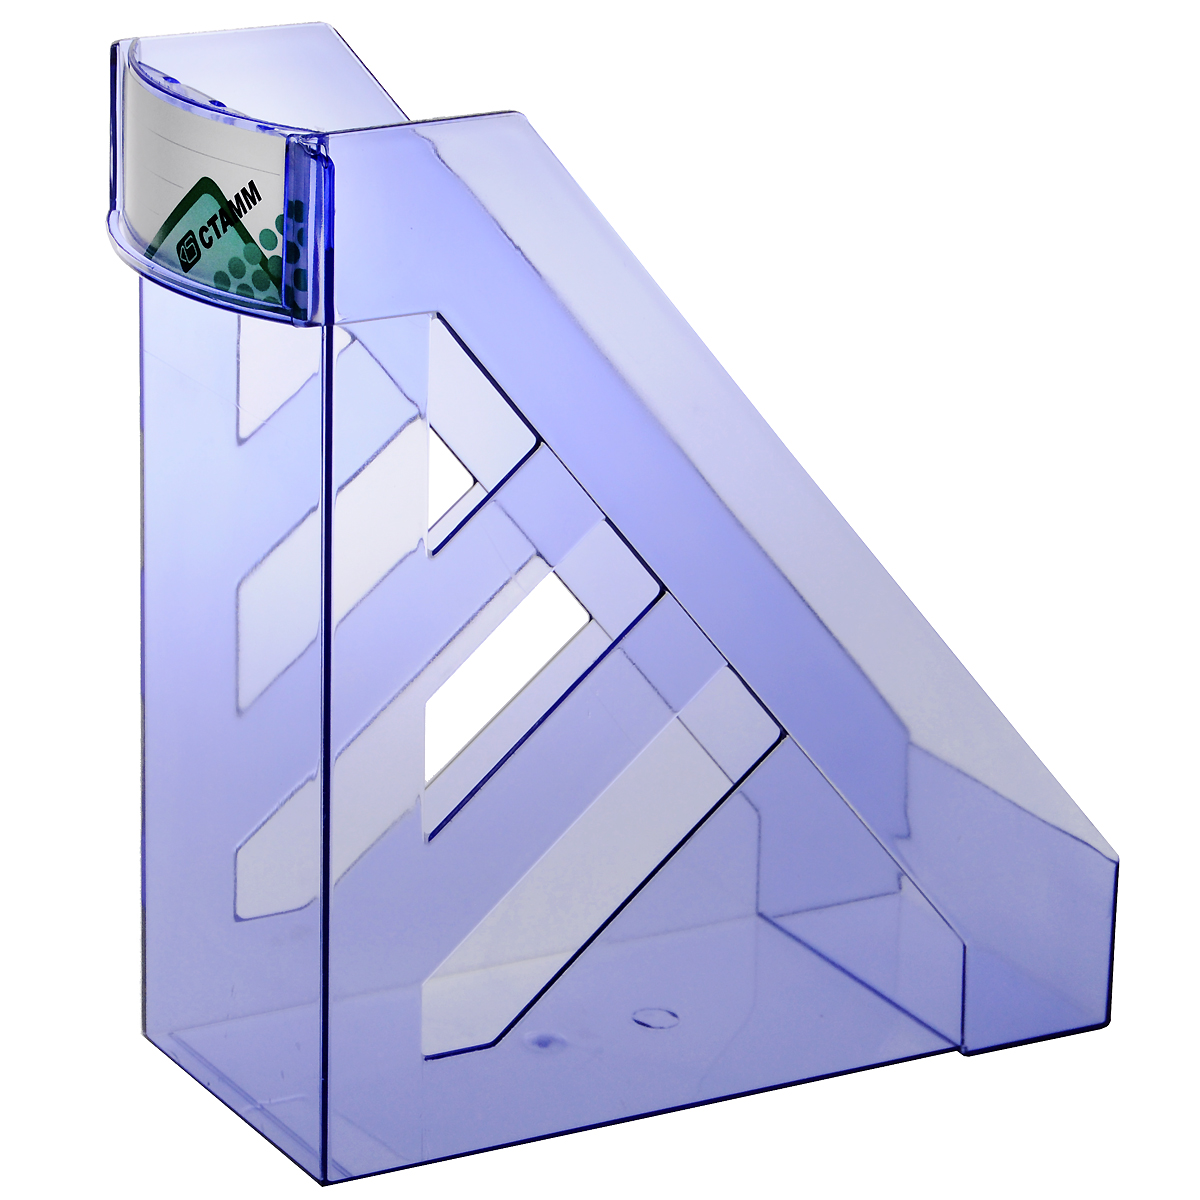 Лоток для бумаг вертикальный Стамм "Ультра", цвет: голубой. ЛТ05